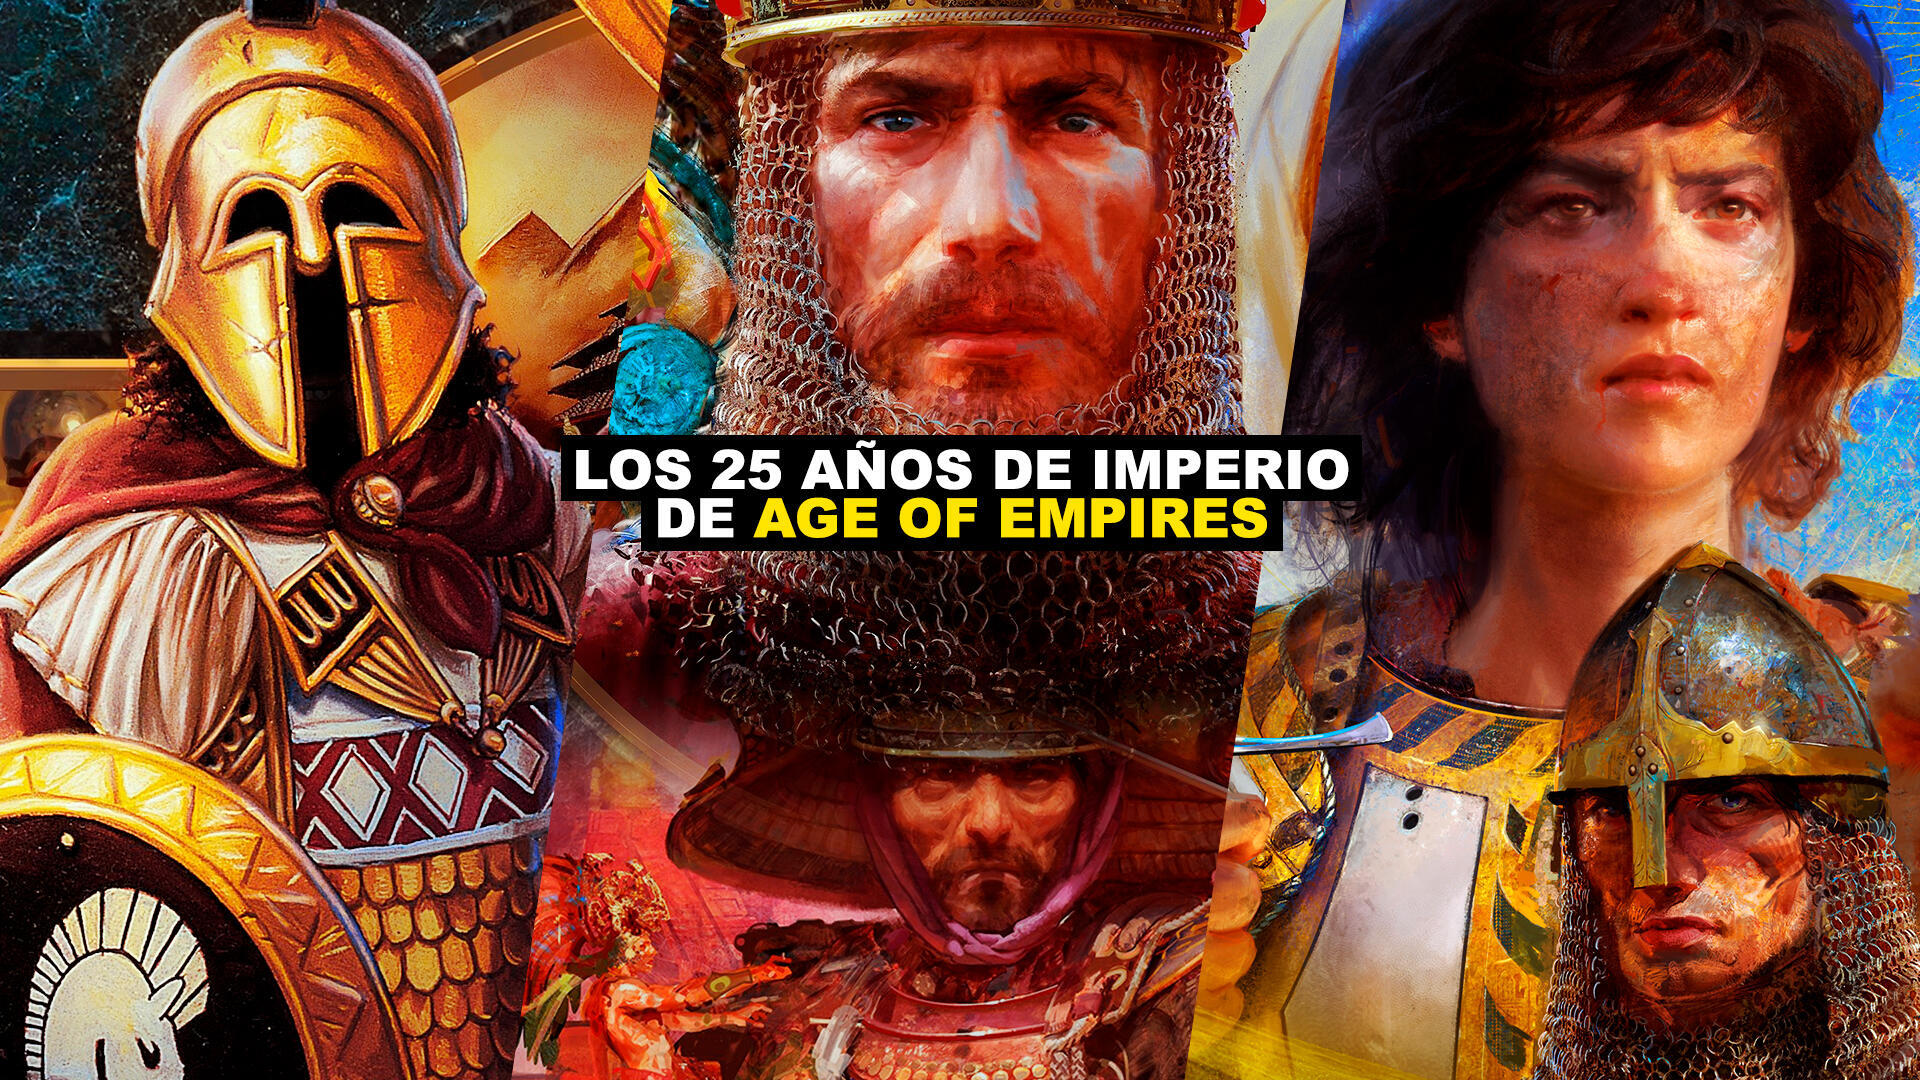 Los 25 aos de imperio de Age of Empires